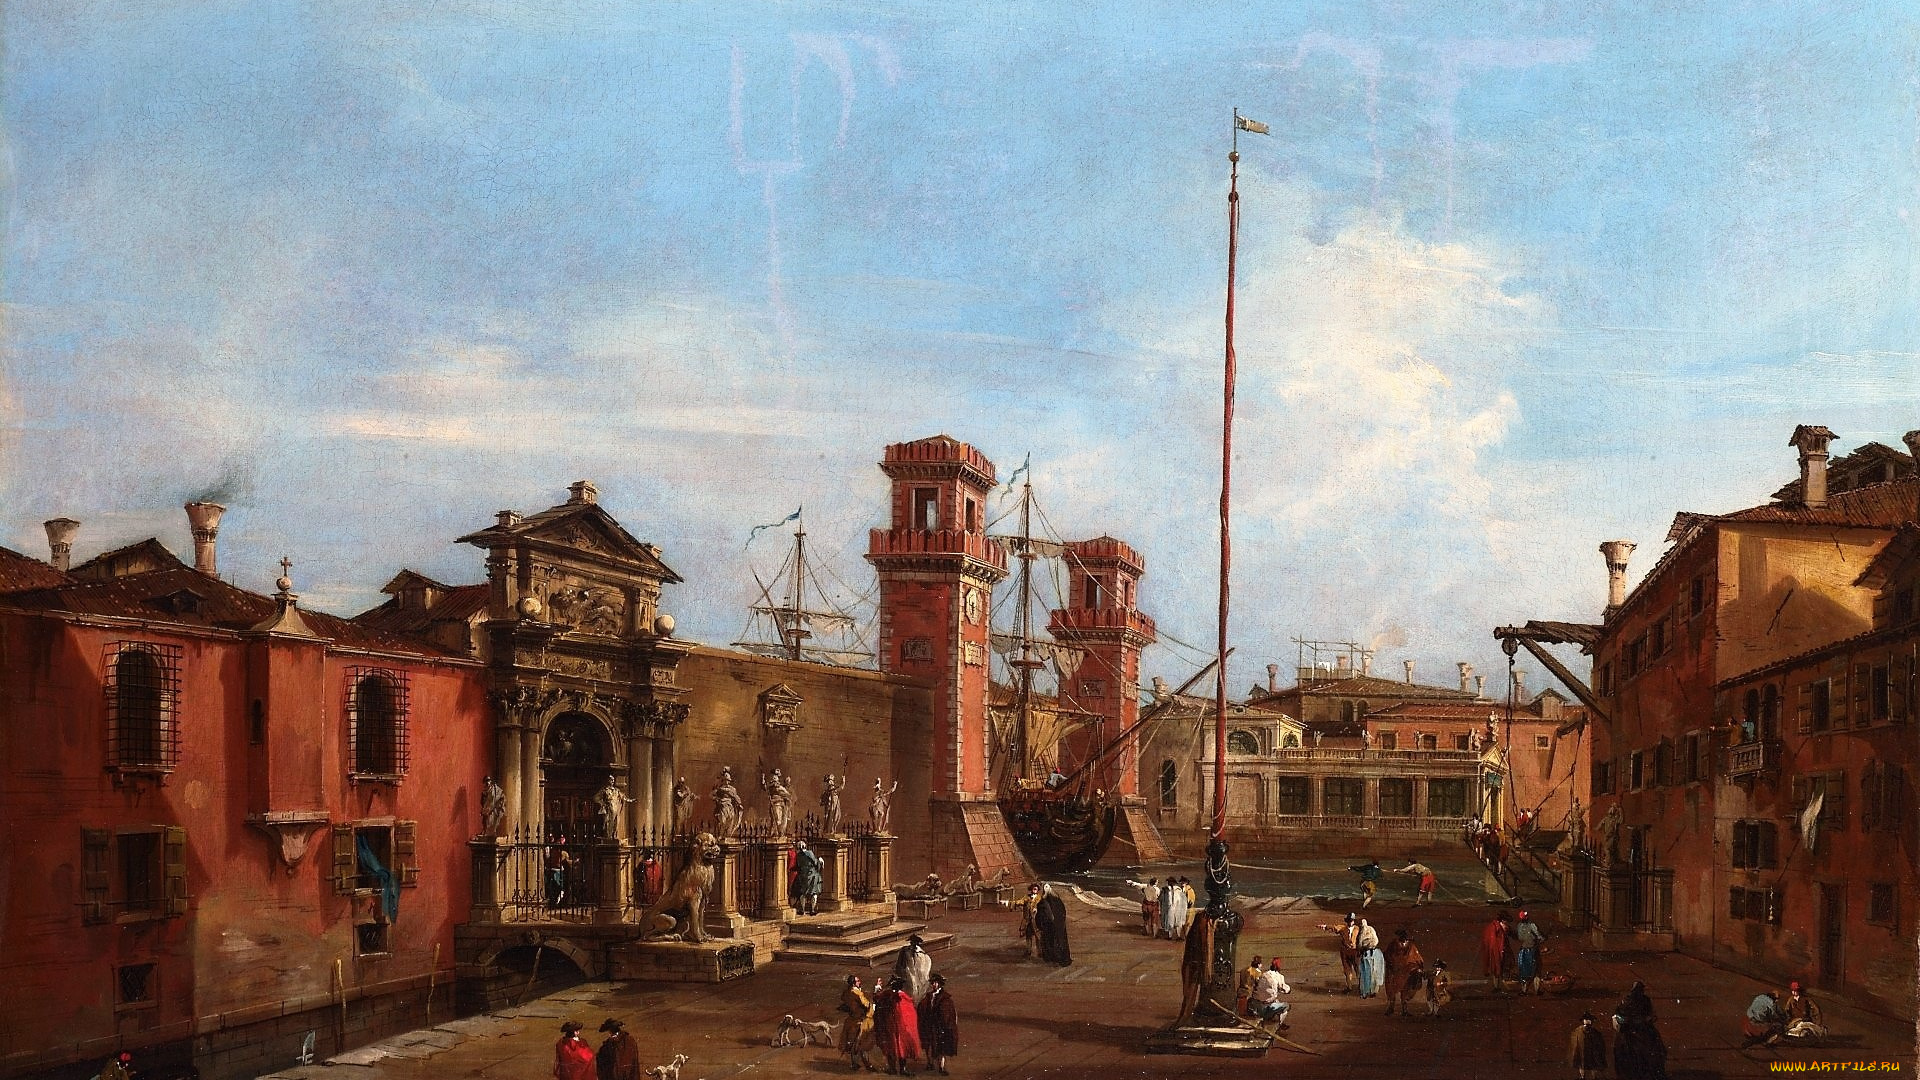 венеция, , арсенал, -, гварди, франческо, лаццаро, рисованное, живопись, люди, здания